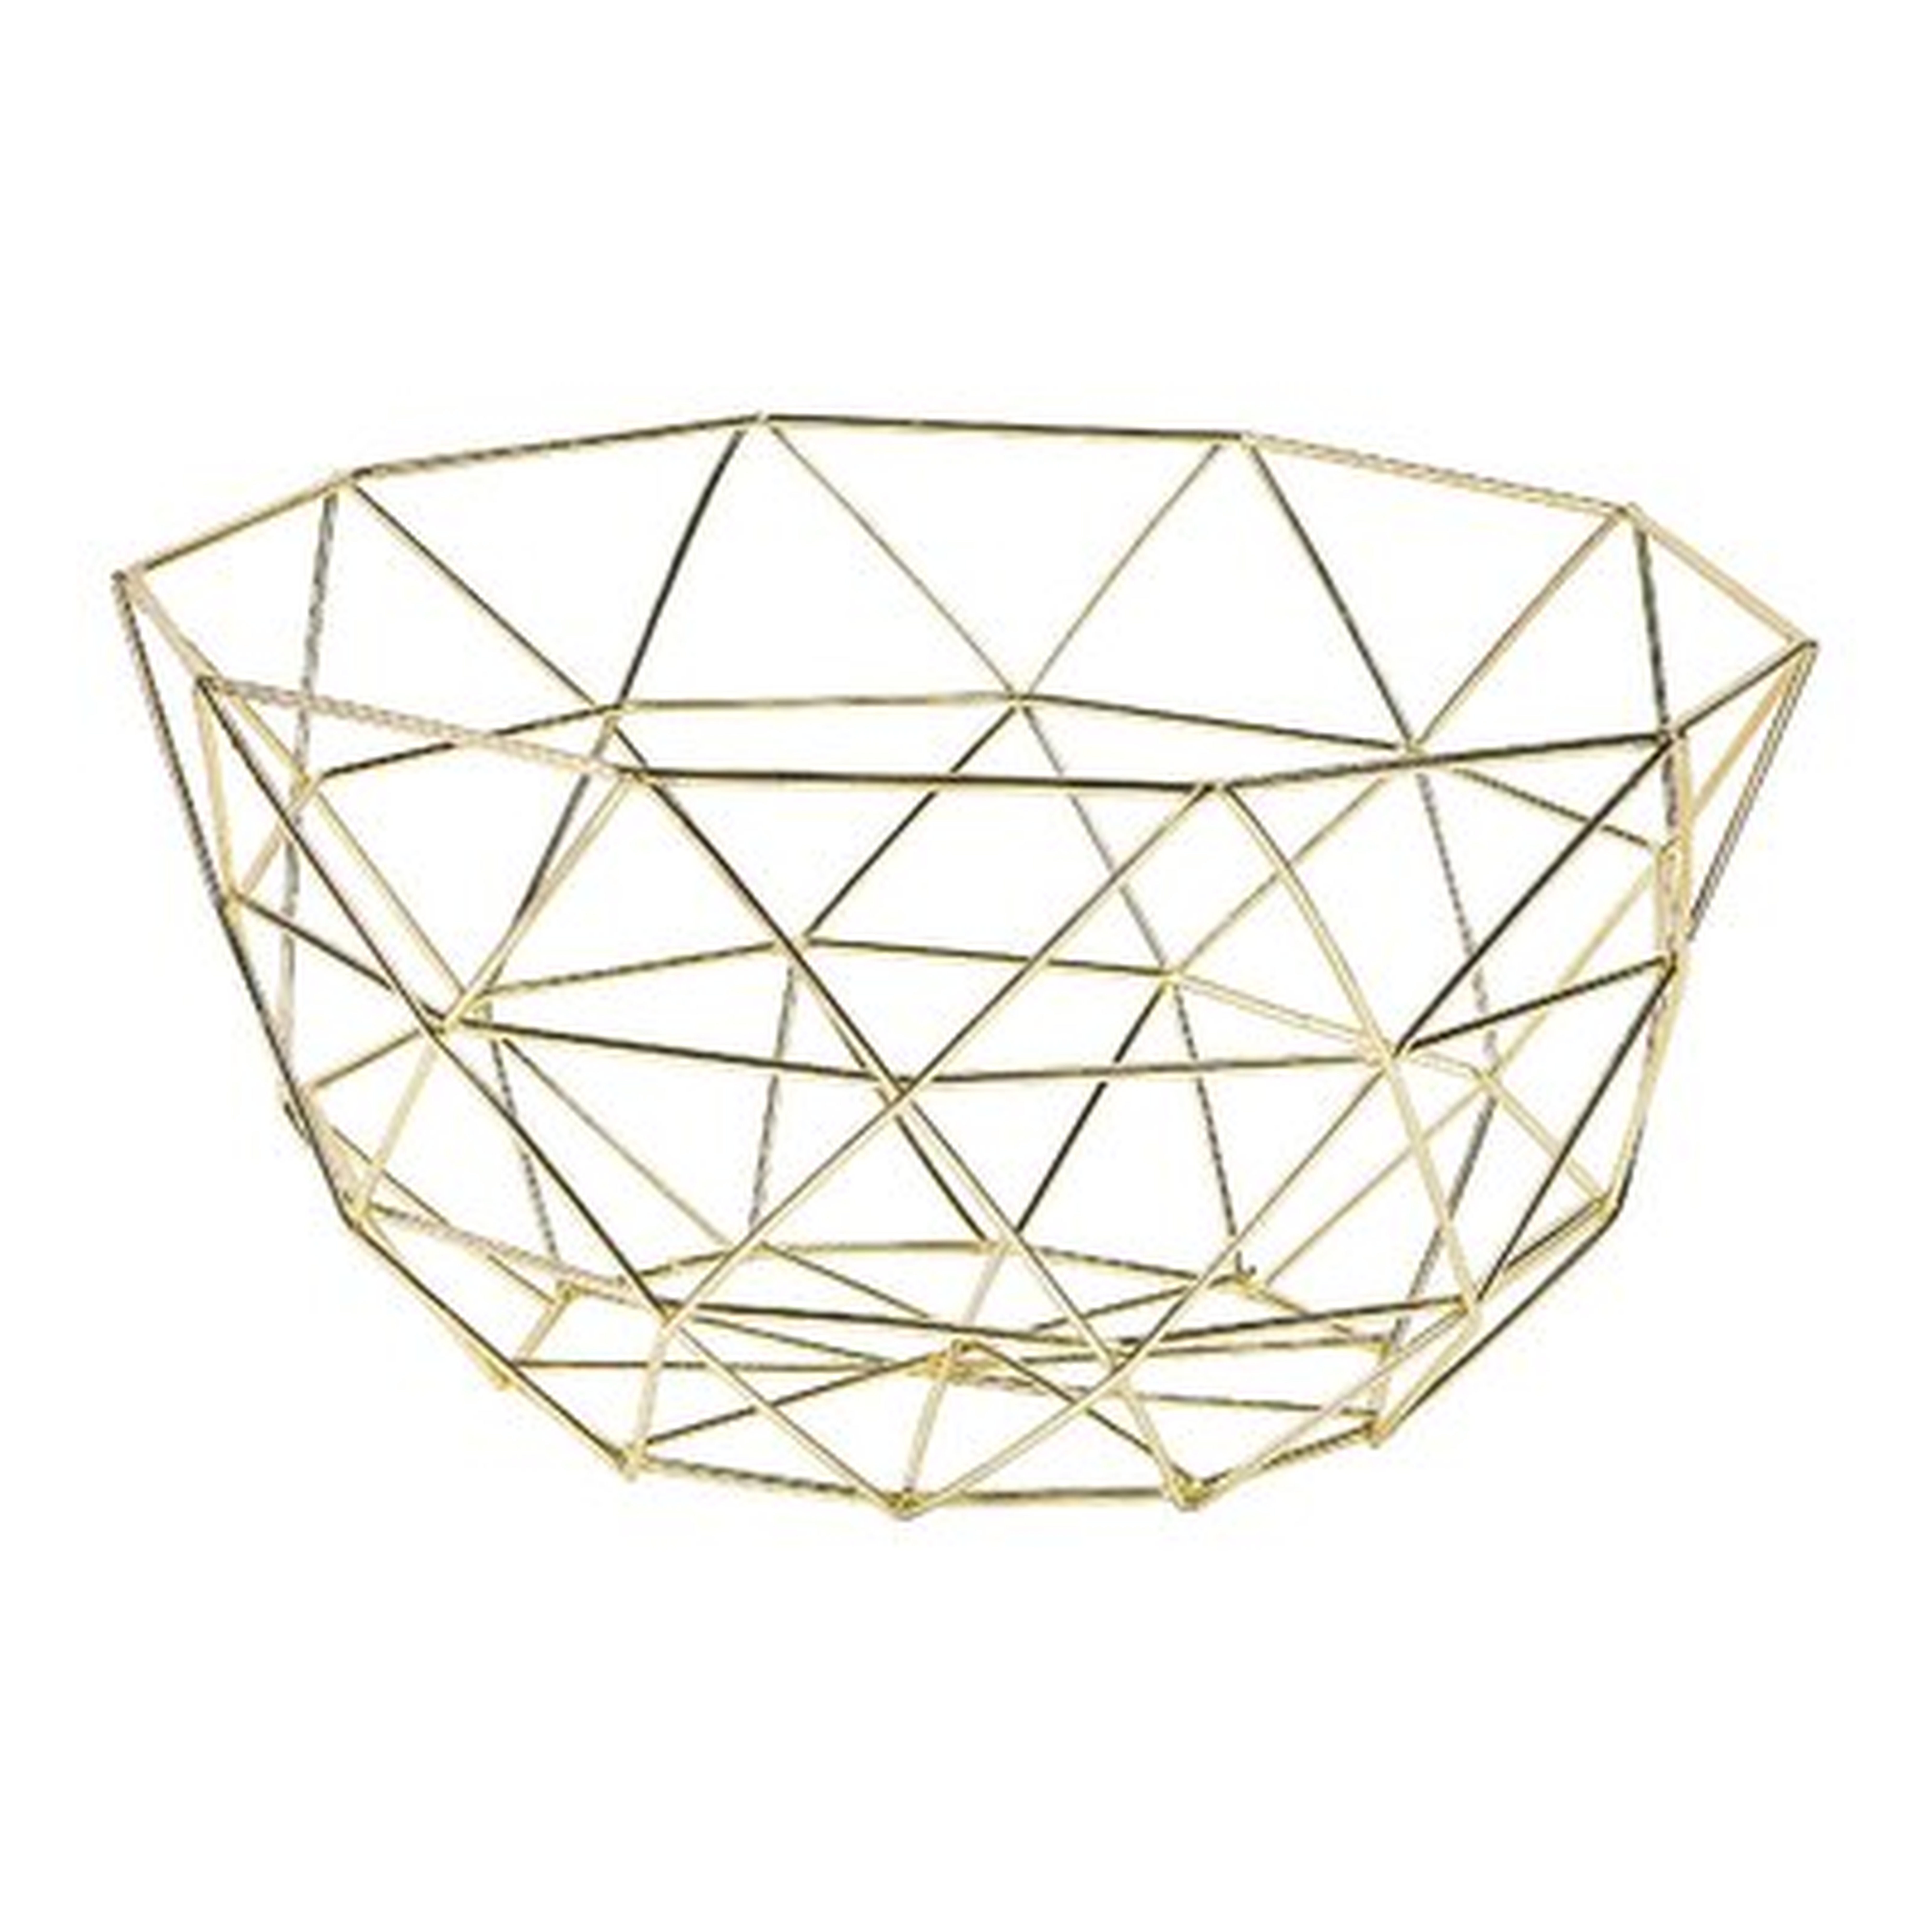 Gold Geometric Wireframe Basket - Baskets & Storage - Wedding - 1 Pieces - Wayfair